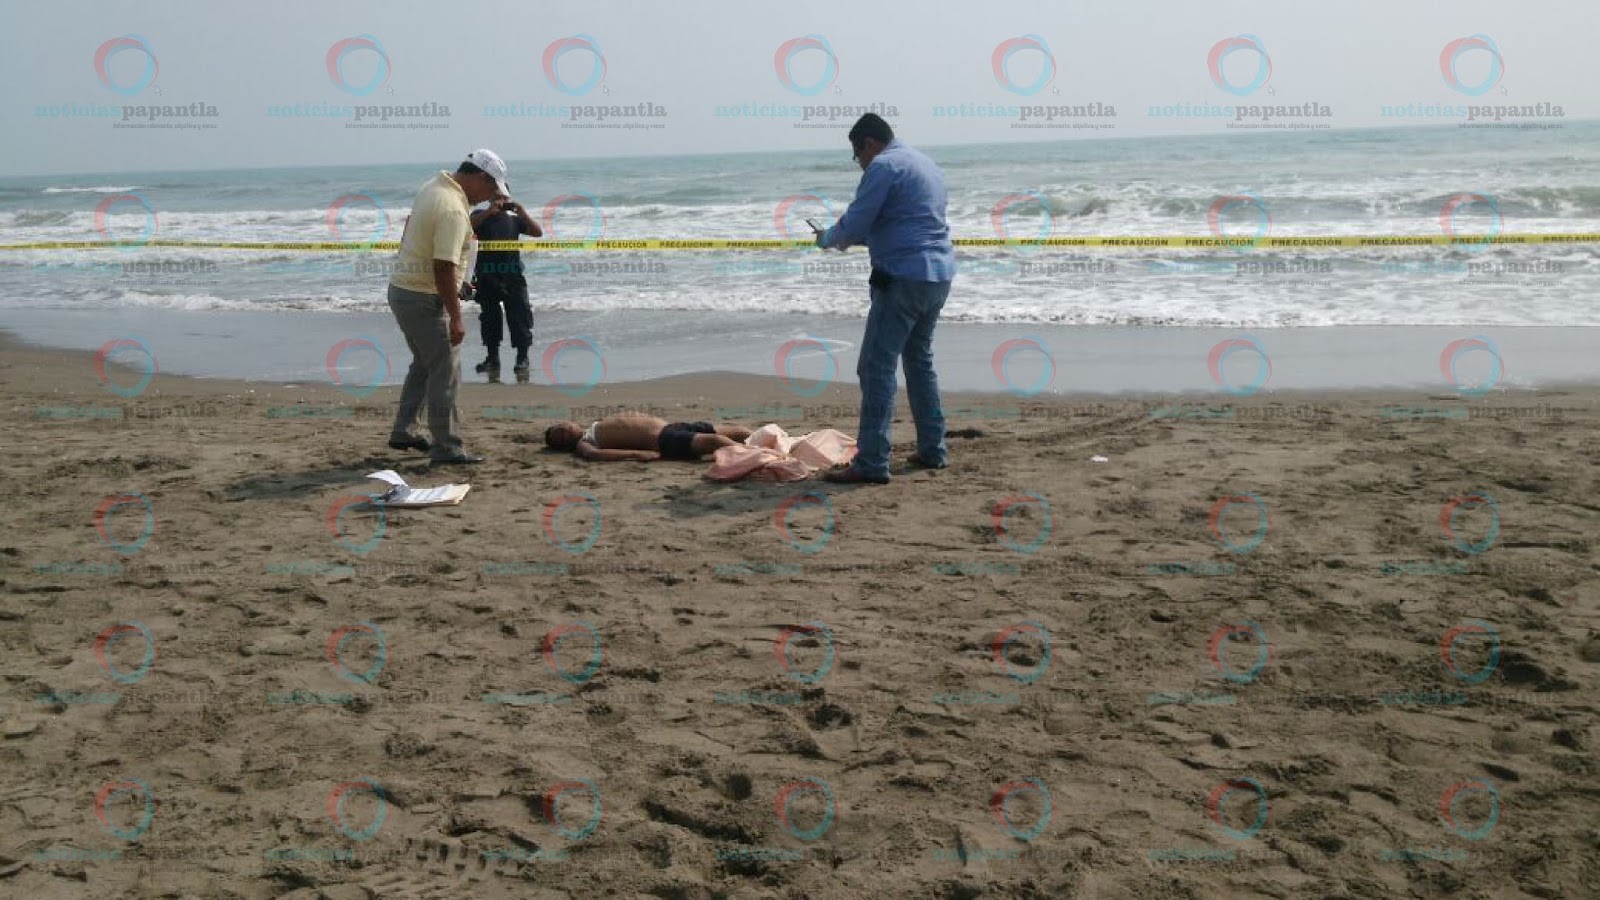 Noticias Papantla: Se ahoga otro niño en playas de ...